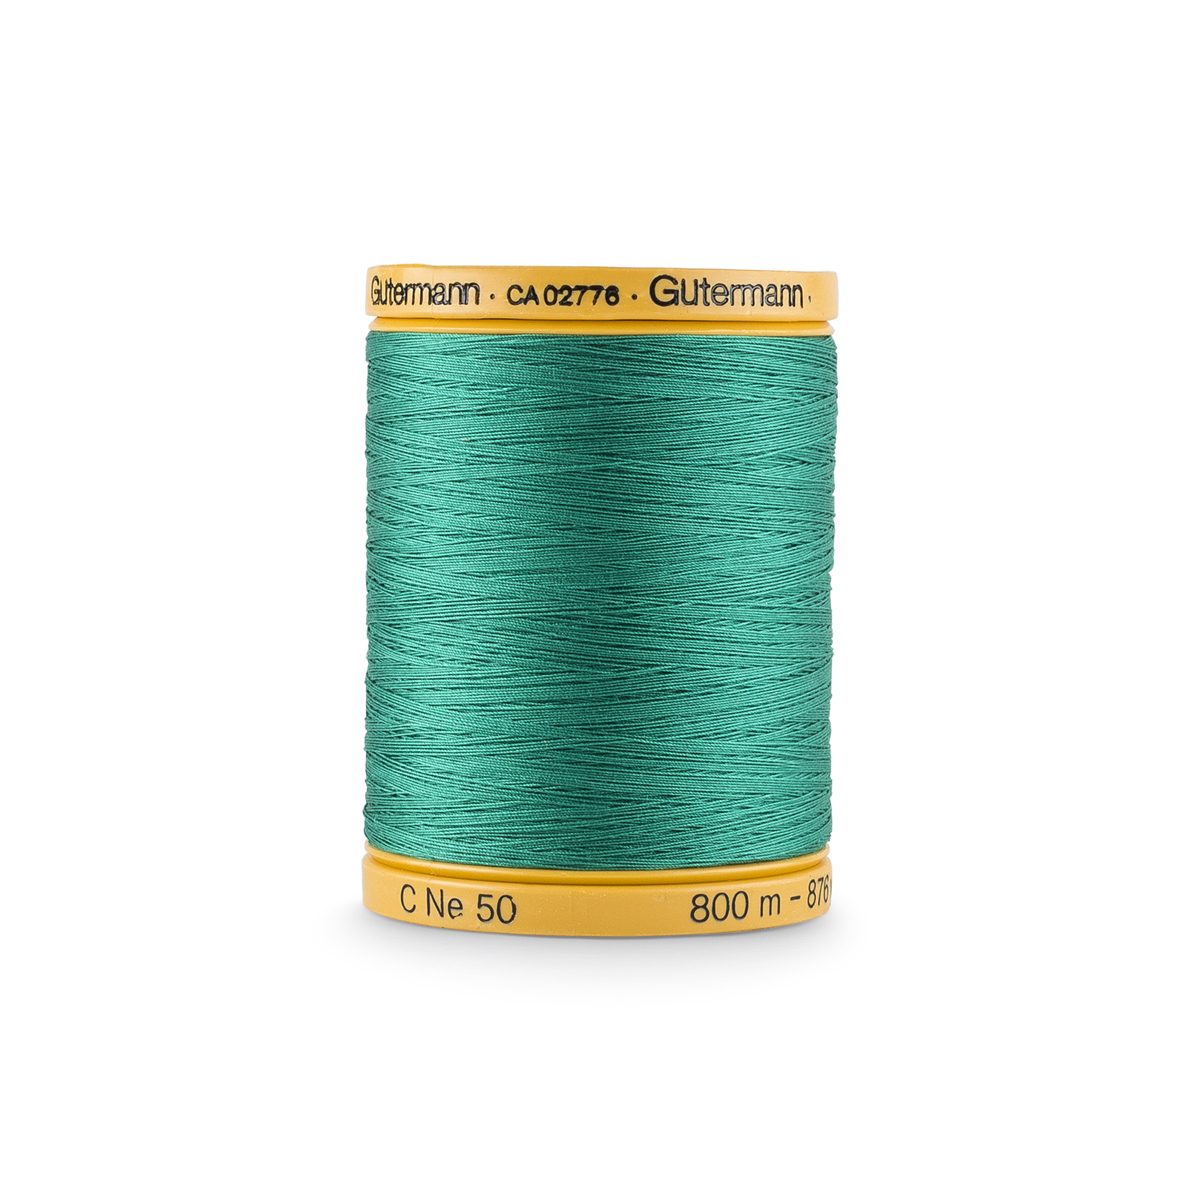 Gutermann Natural Cotton 50 Weight Thread, 400m 5709 white